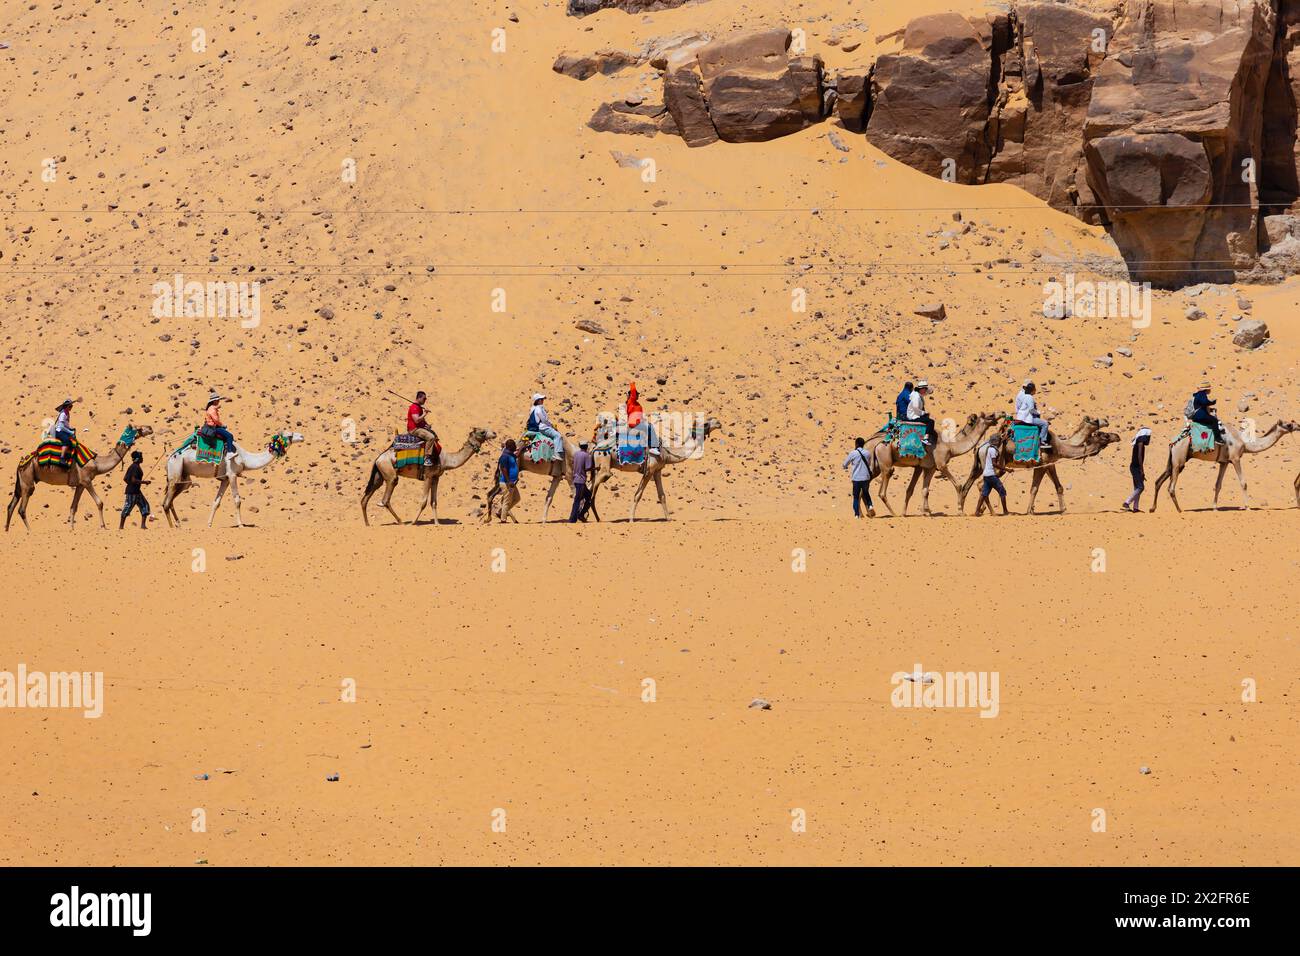 Les touristes font un tour en train à dos de chameau à travers le désert du Sahara, sur les rives du Nil. Assouan. Égypte Banque D'Images